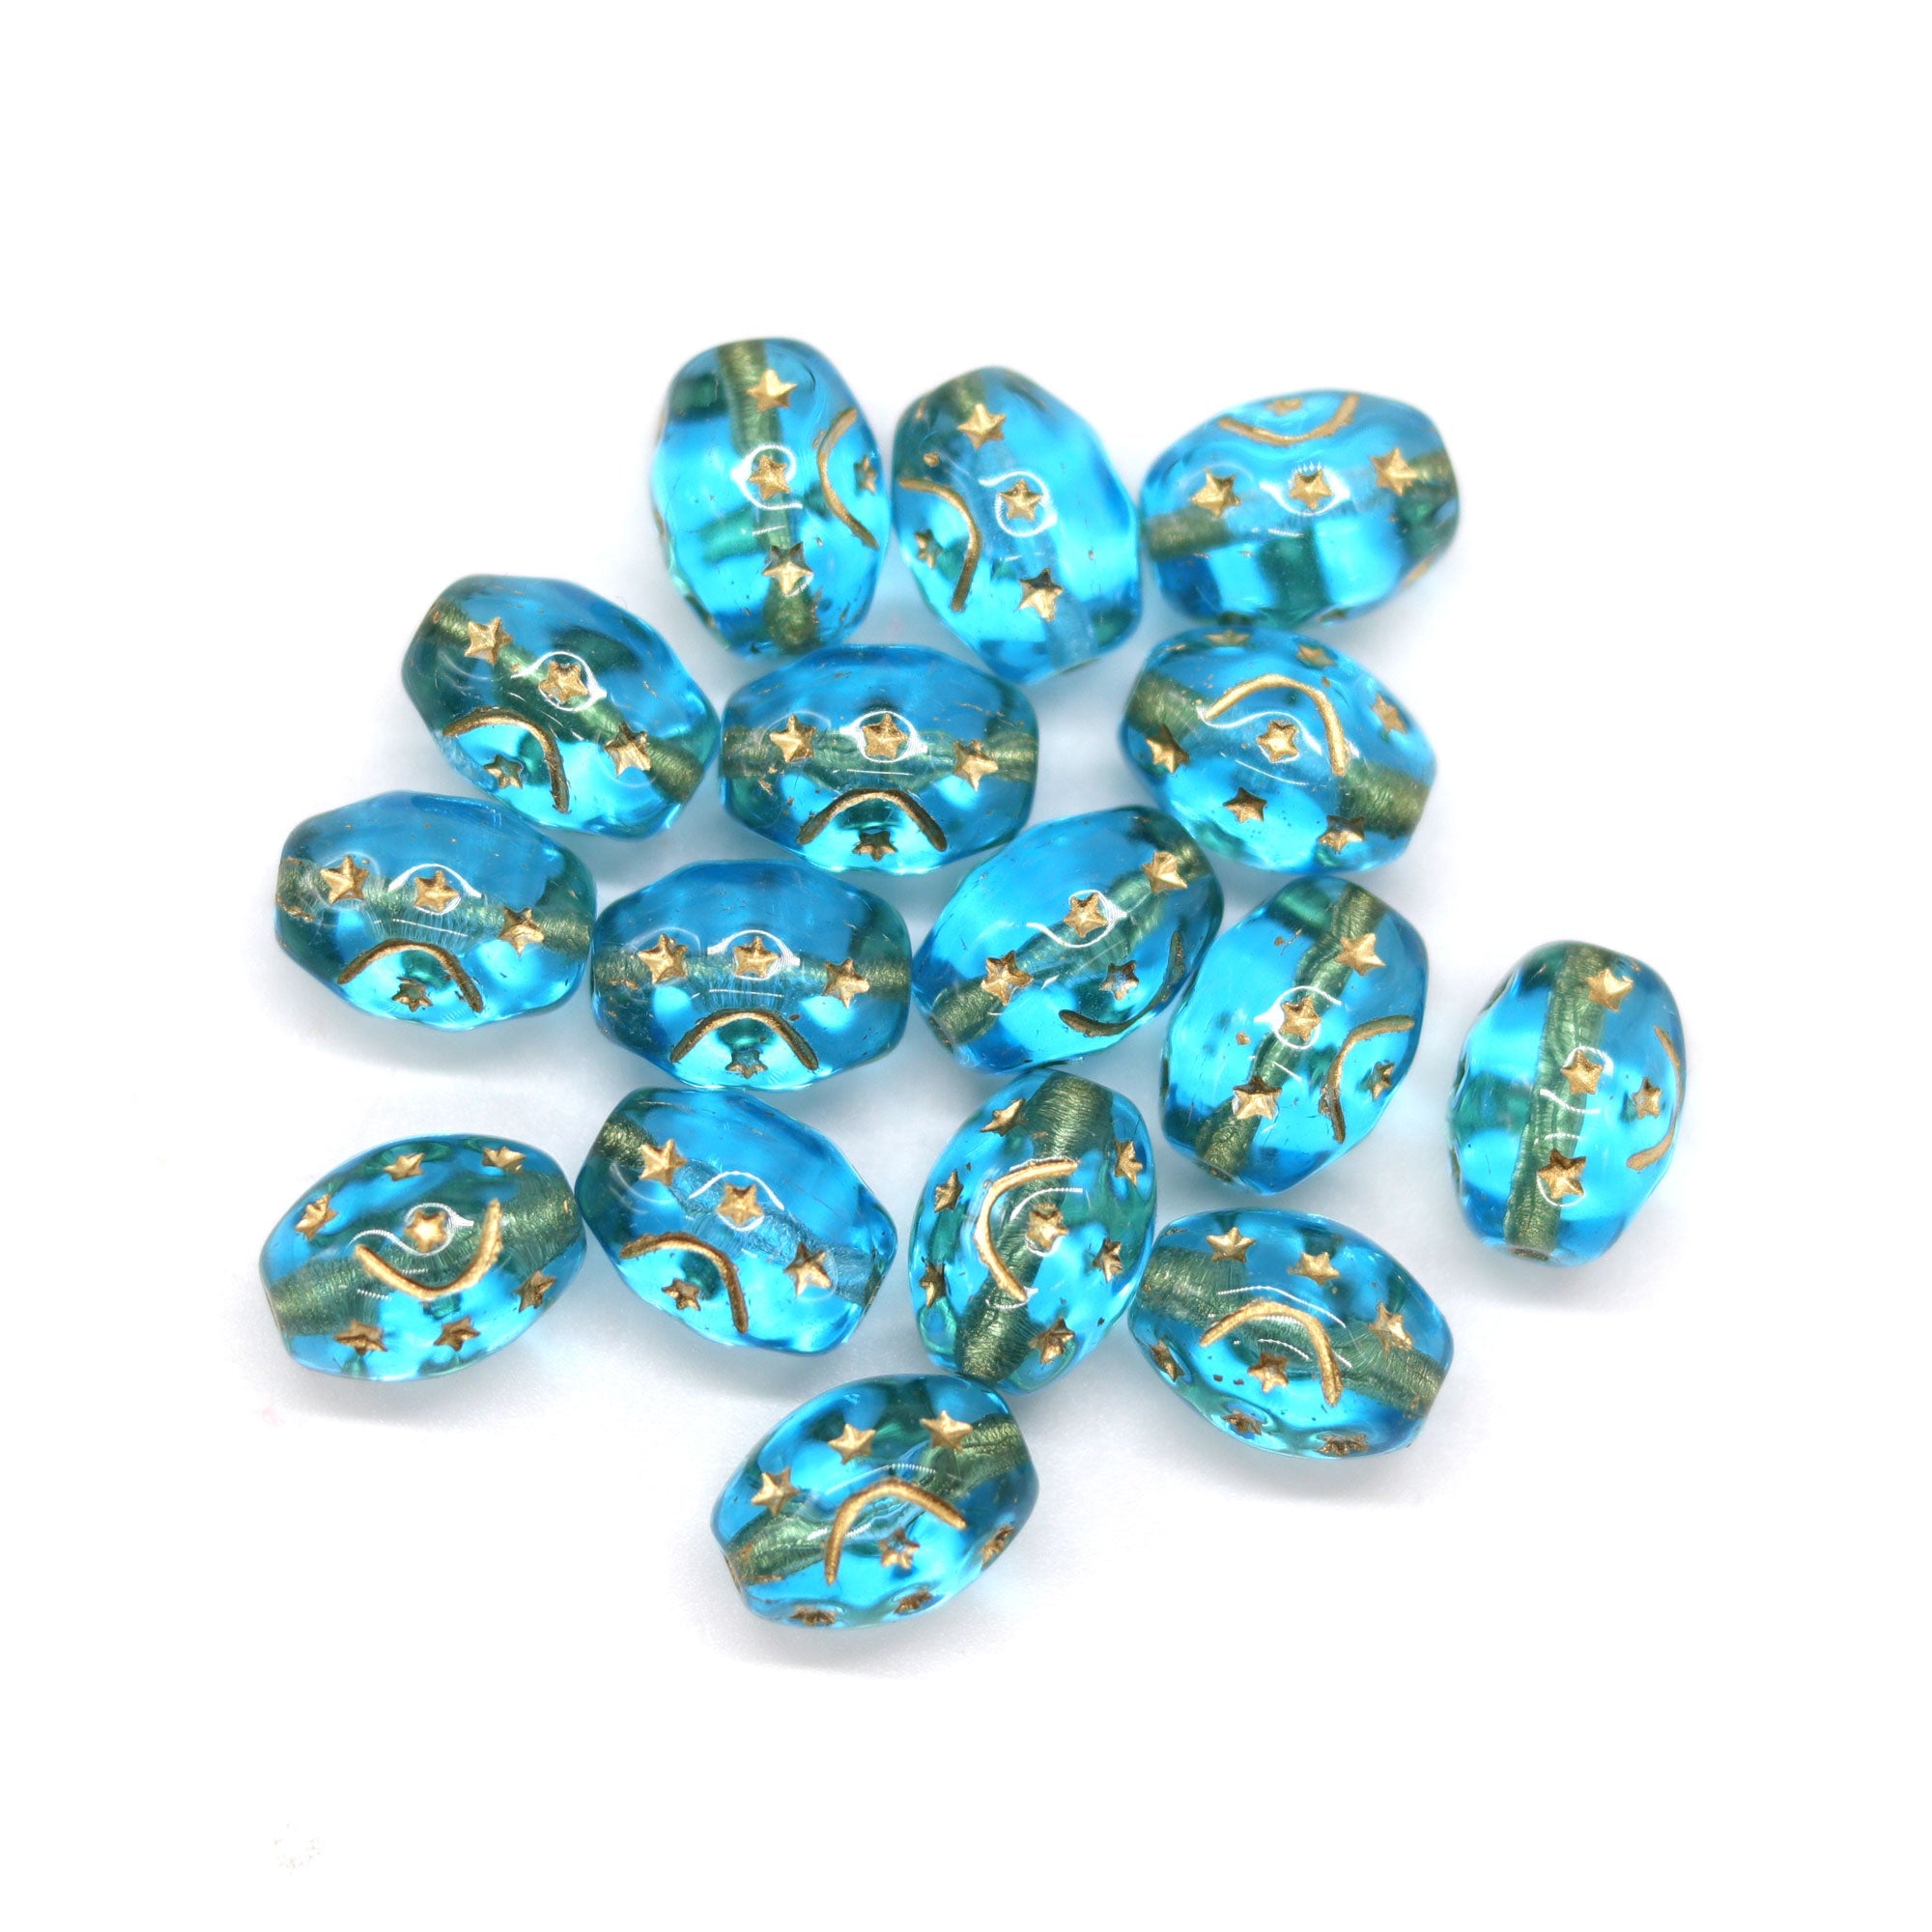 10pc Dark blue cat head Czech glass beads Gold wash – MayaHoney beads